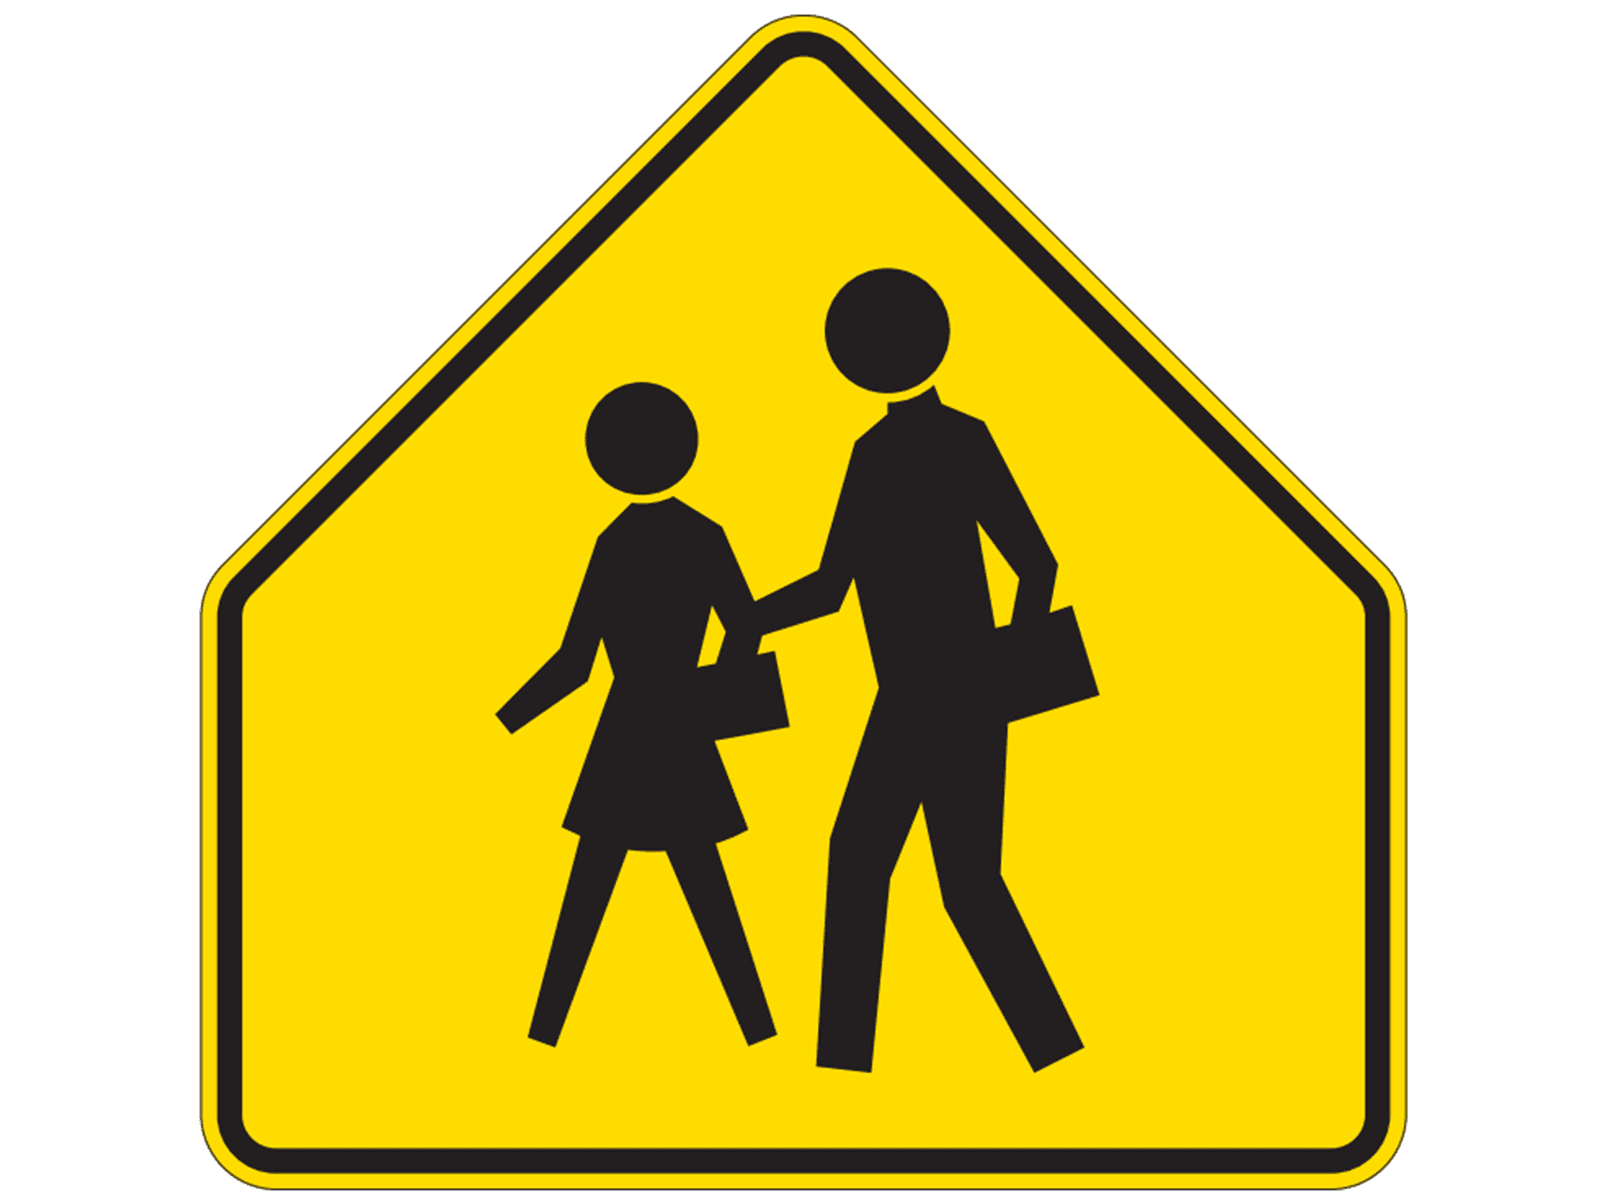 School Zone Sign S1-1z - S: School Signs